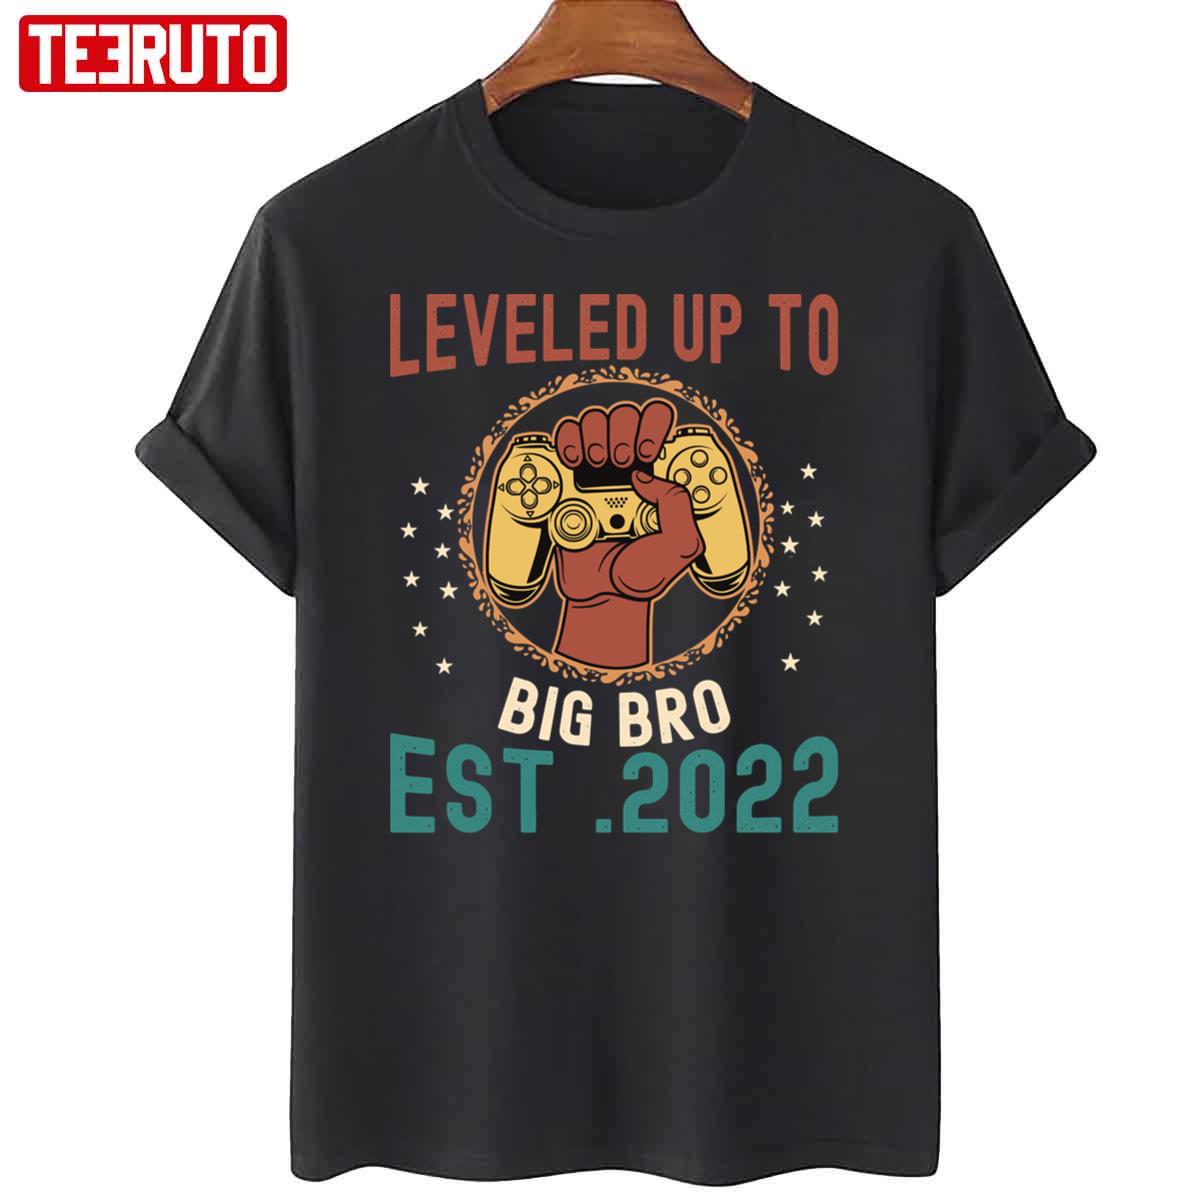 Leveled Up To Big Brother Est 2022 Retro Unisex T-Shirt